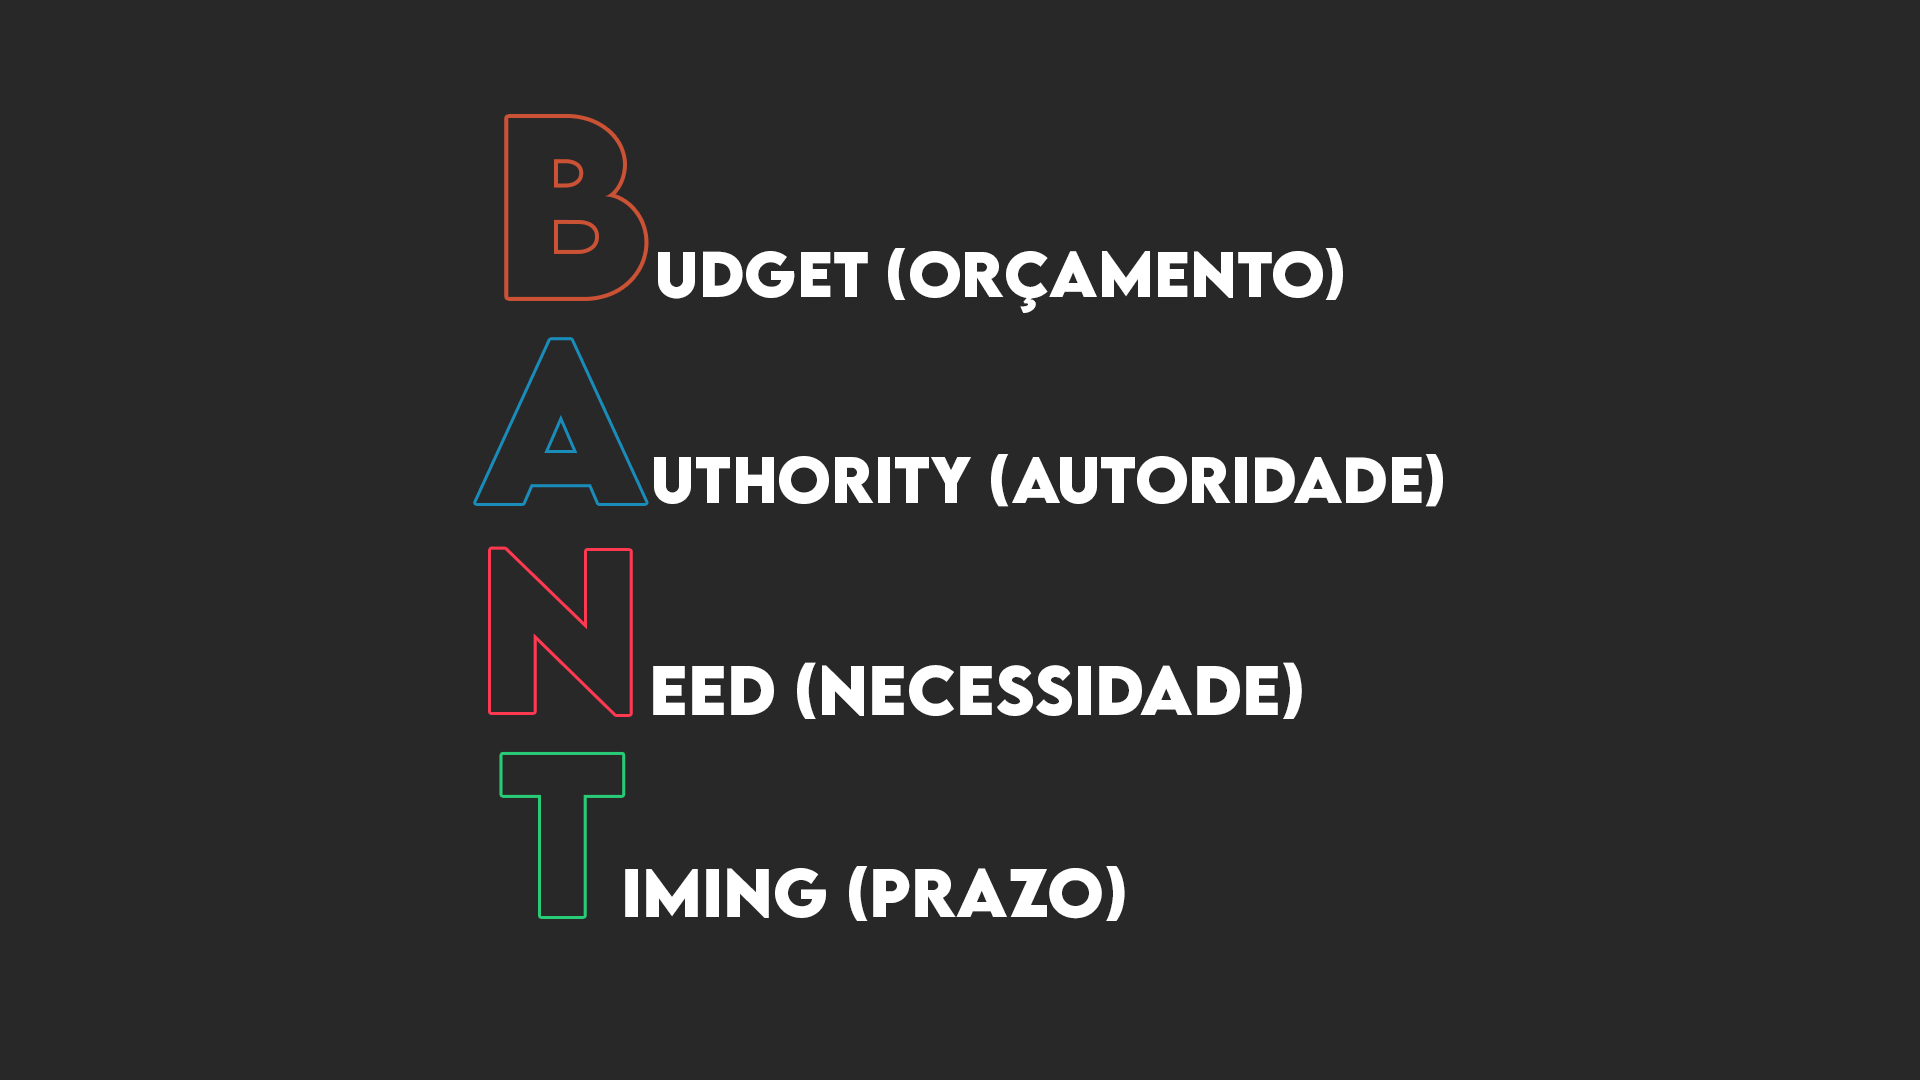 BANT leads qualificados, Budget (orçamento), Authority (autoridade), Need (necessidade), Timing (prazo).